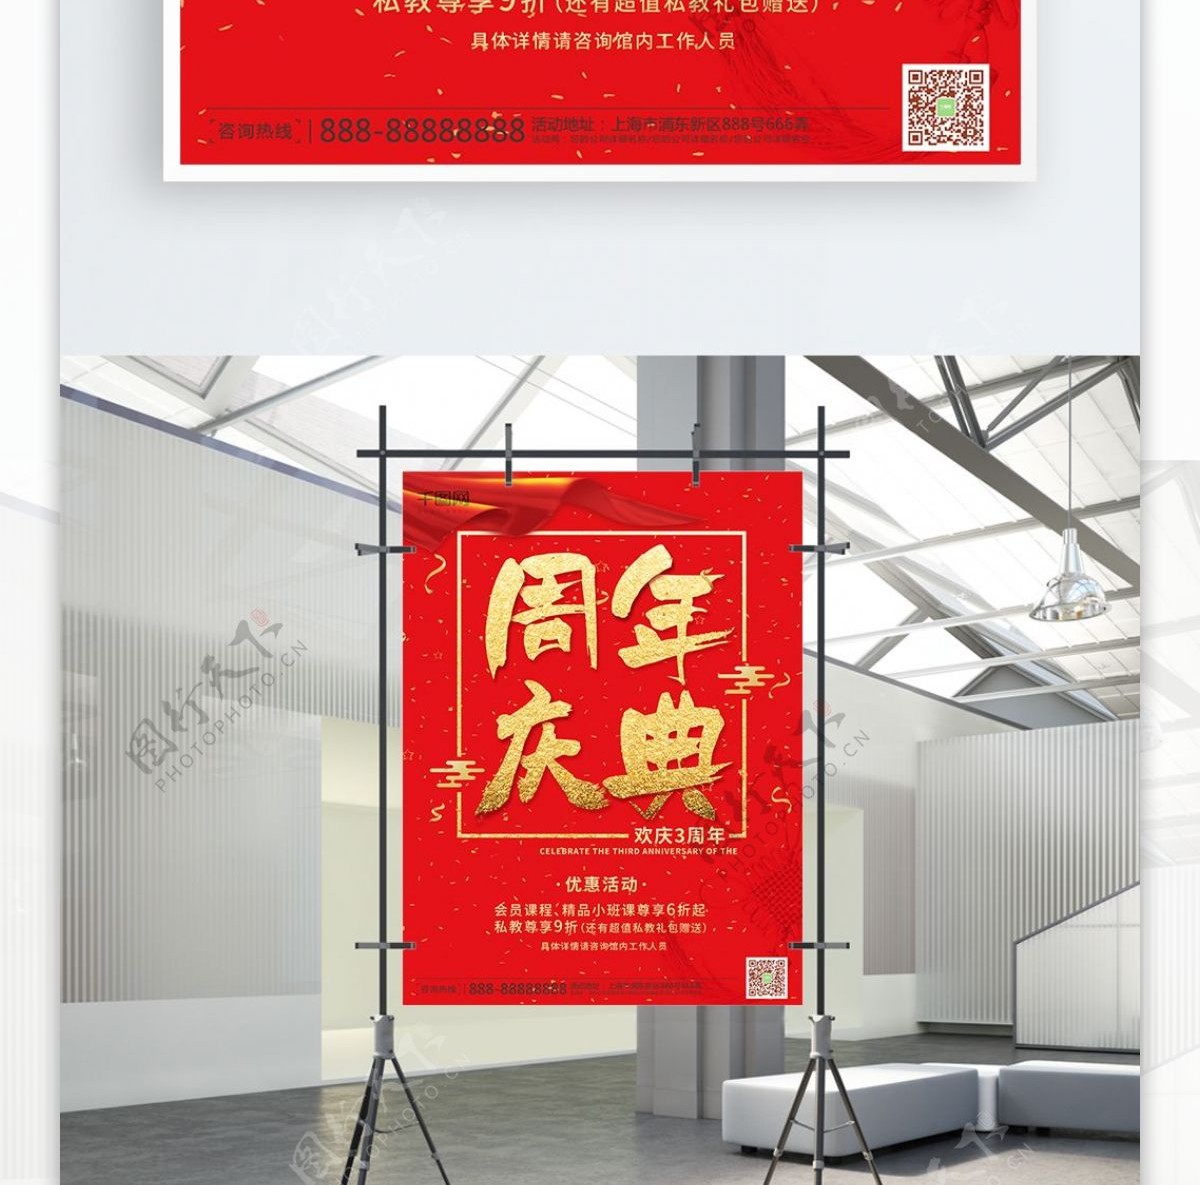 红色喜庆公司3周年庆典海报PSD模版素材